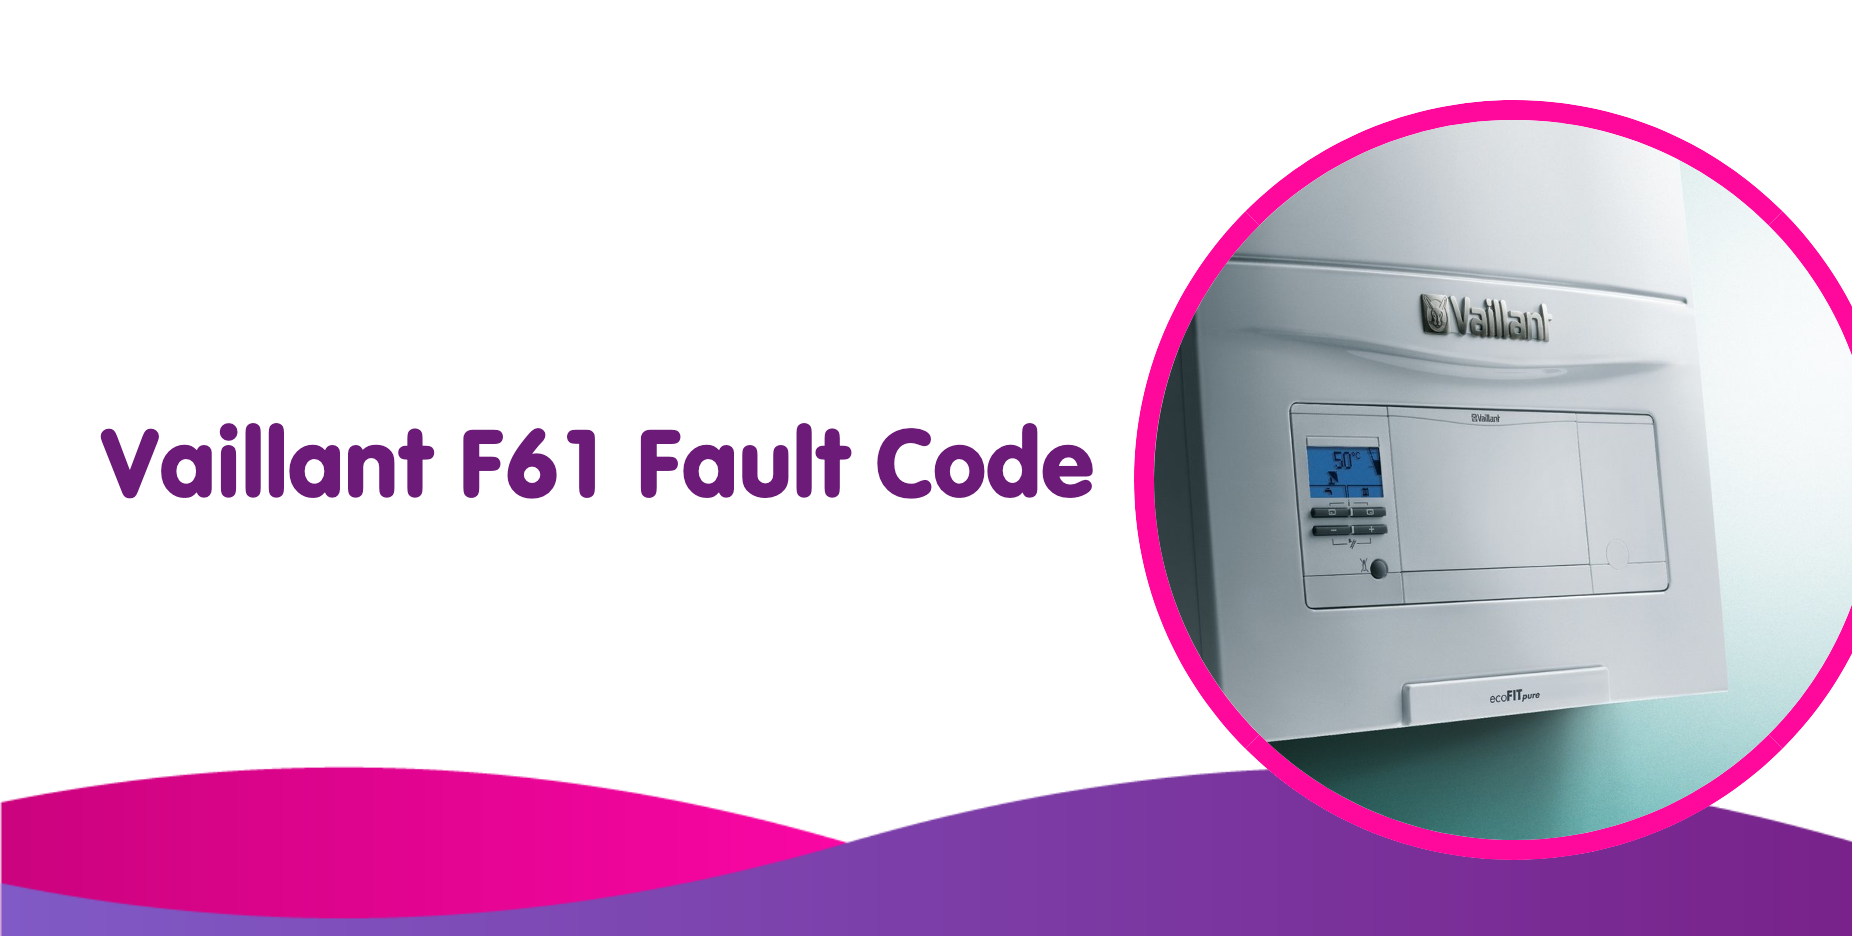 Vaillant F61 Fault Code